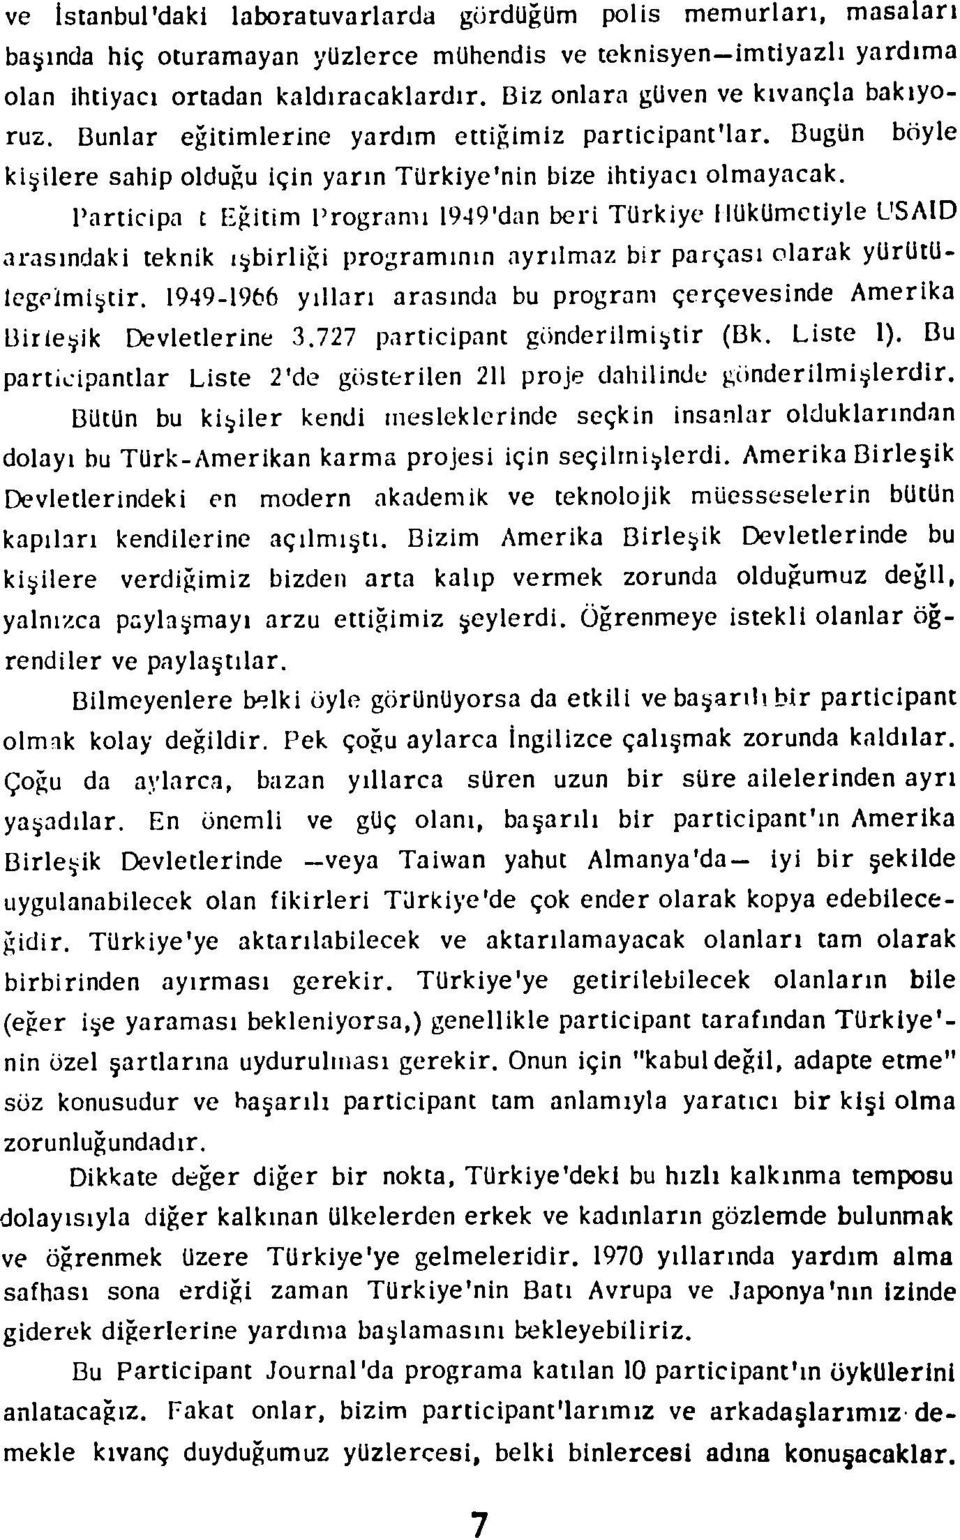 boyle P'articipa t Egitim Programi 1949'dan beri Turkiye IlUkUmetlyle LSAID arasindaki teknik t birlizi programinin ayrilmaz bir parqasi olarak yurutulegelmi~tir.